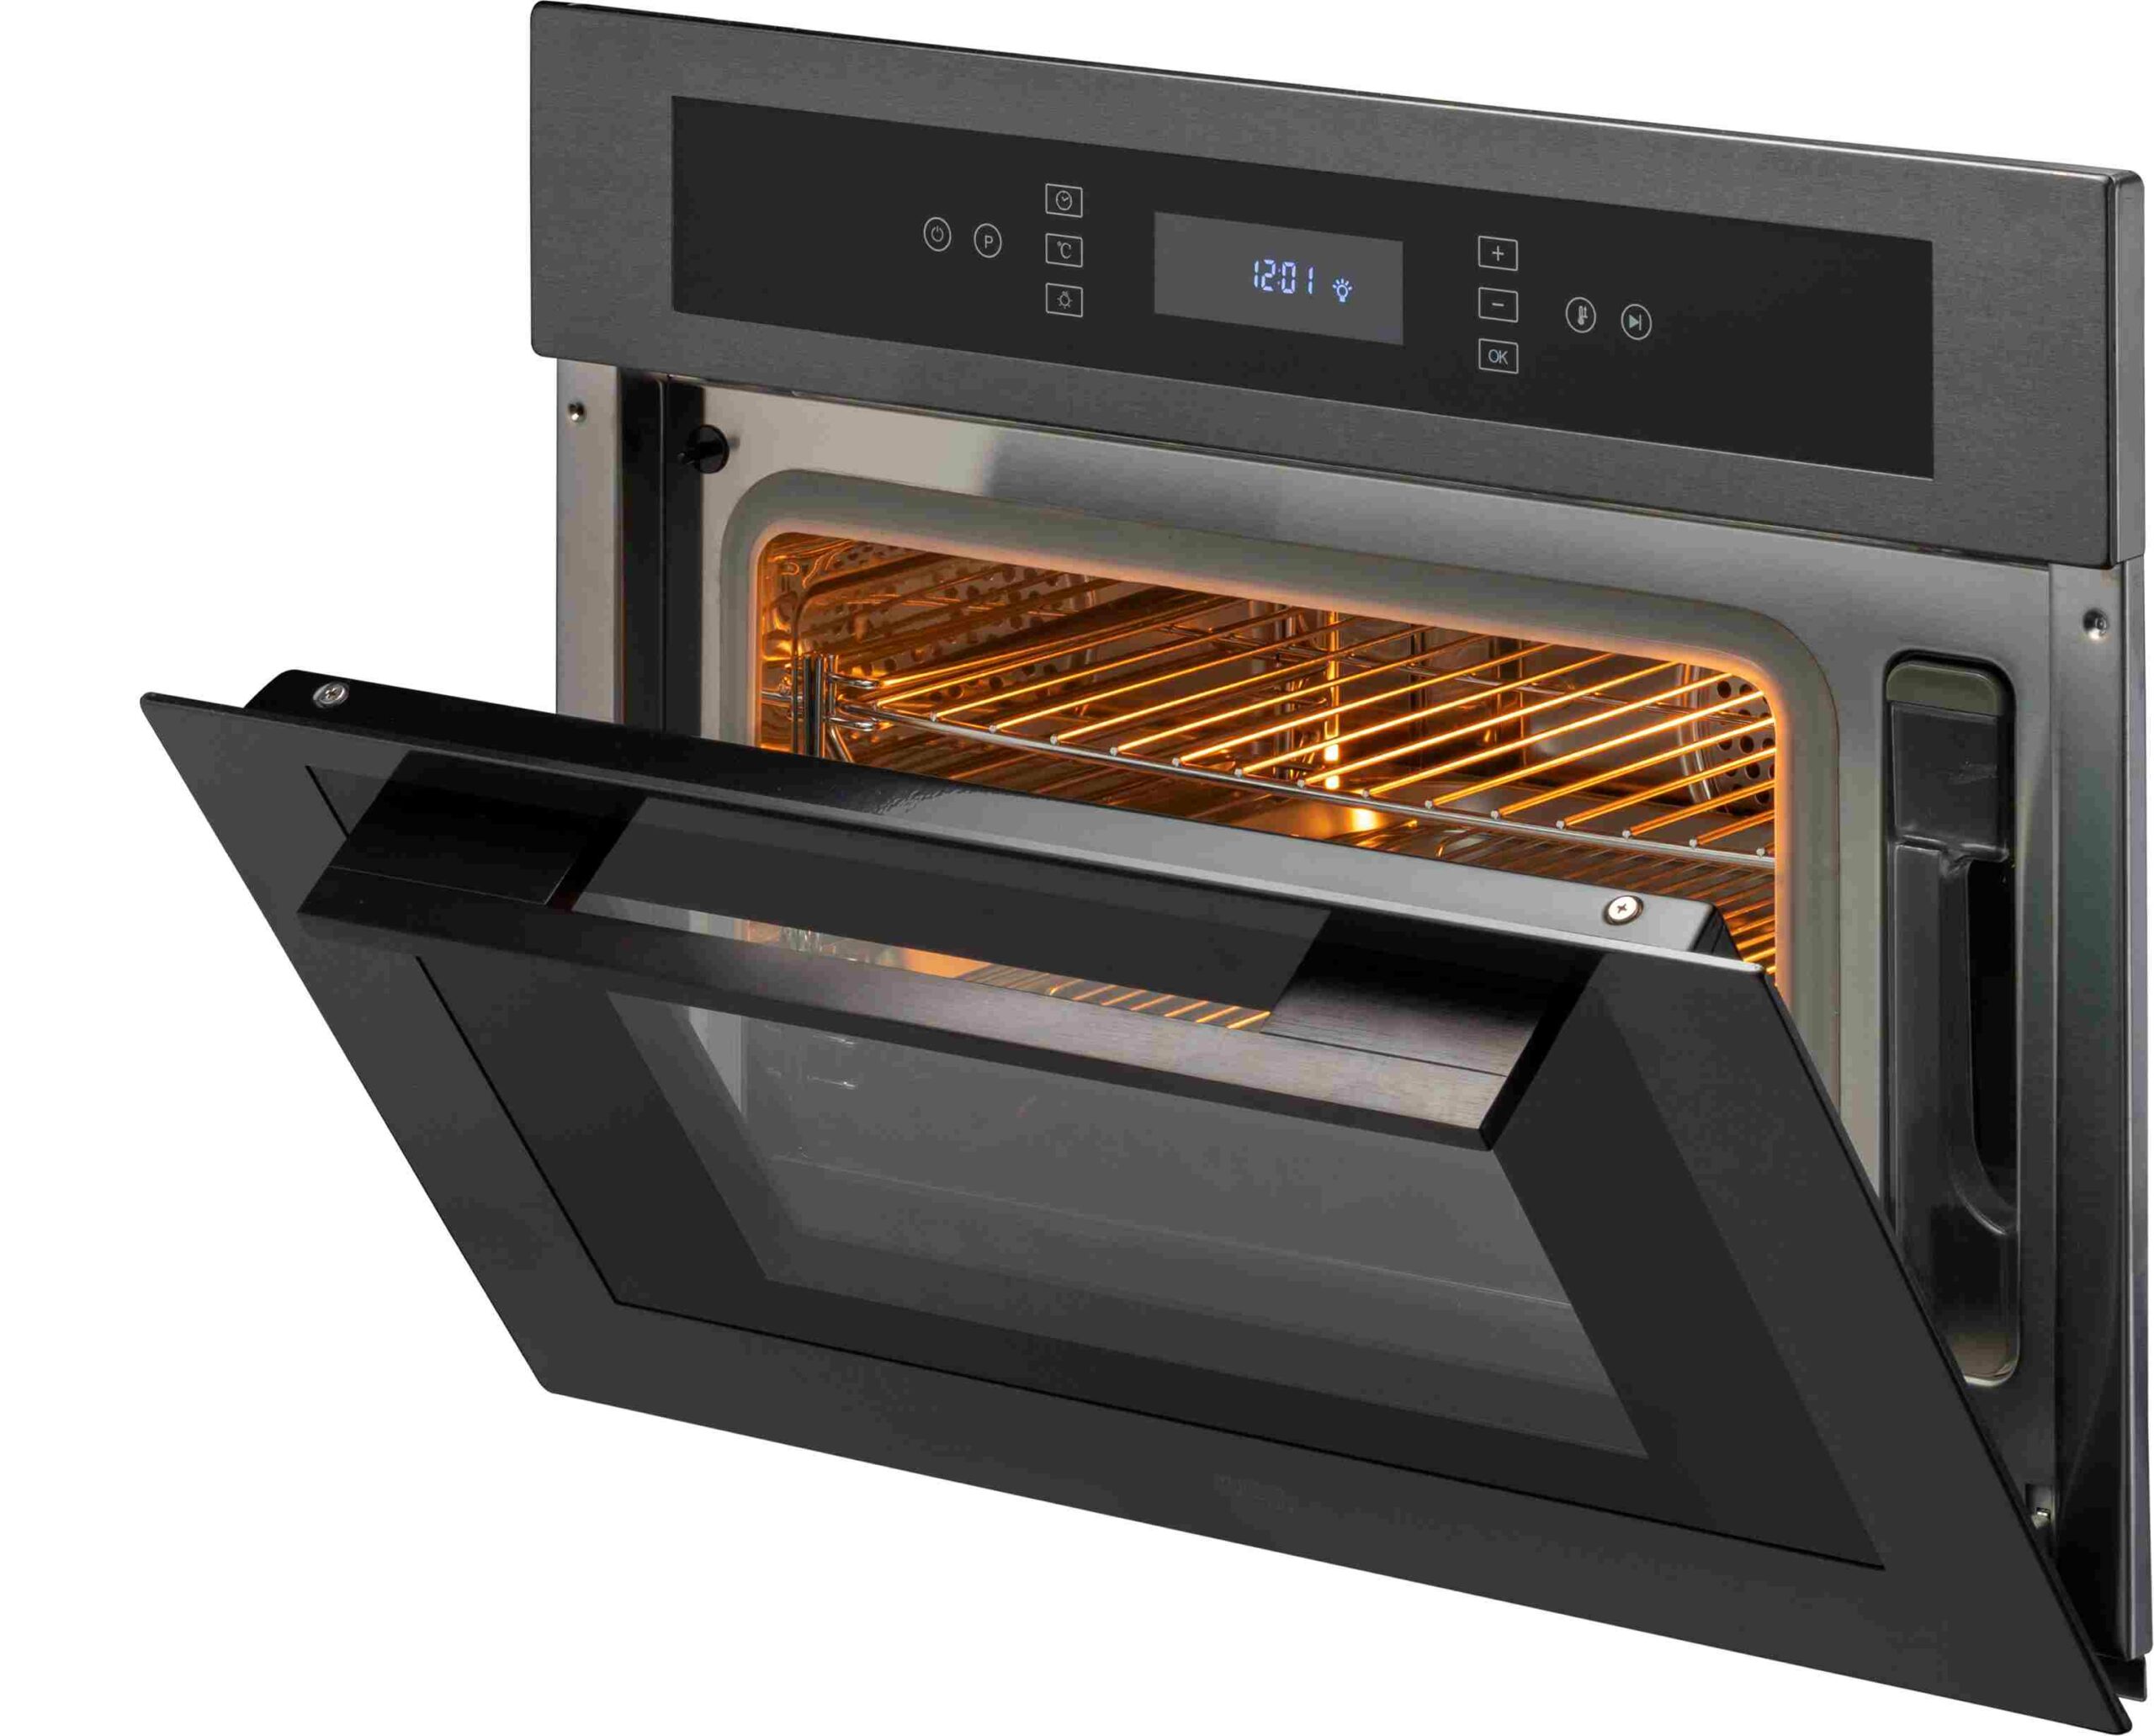 Built-in oven, premium kitchen appliances